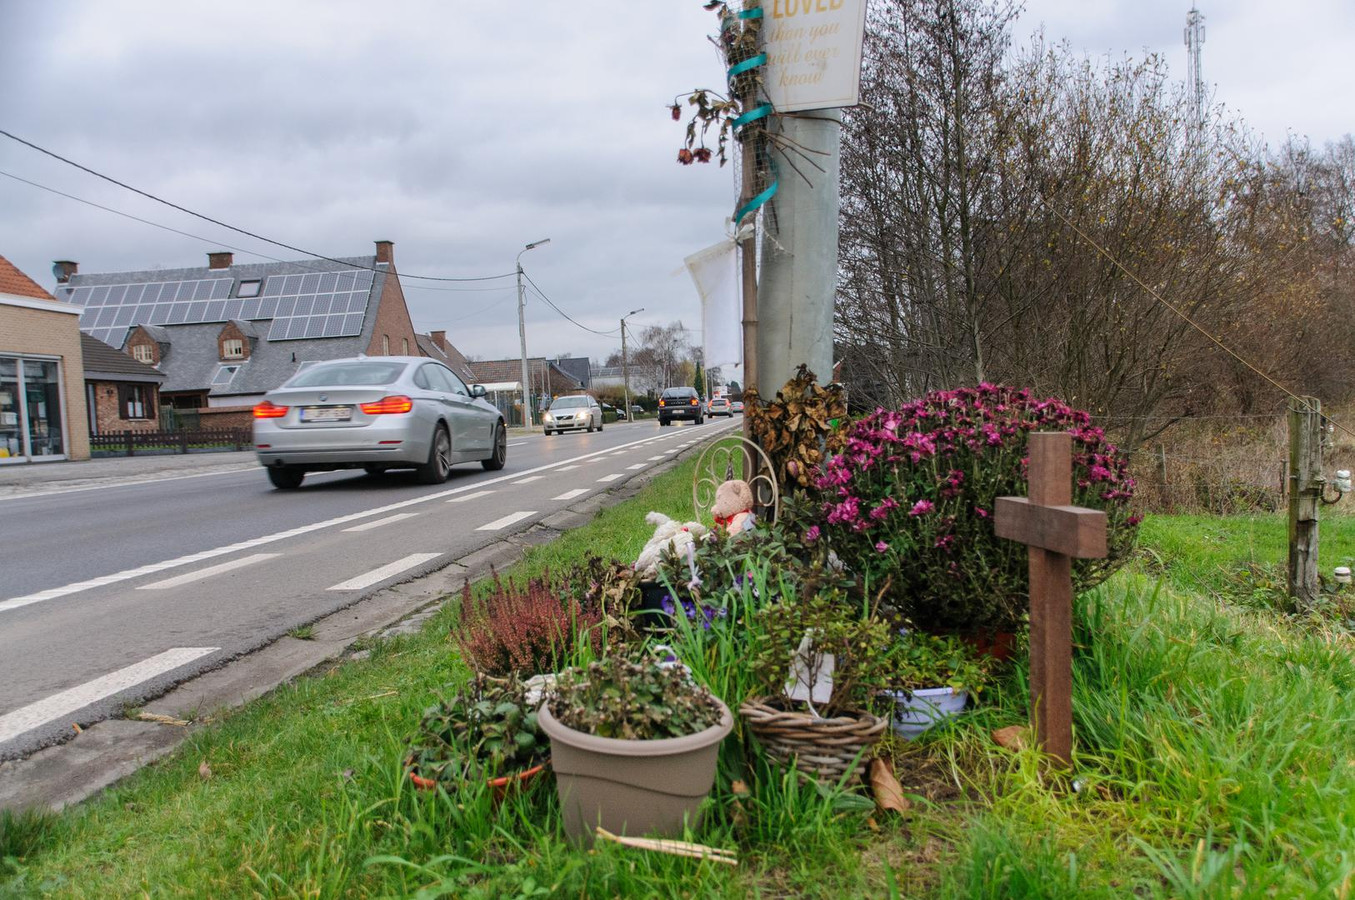 Op de plaats waar eind augustus 2015 Noah Mortier van de weg werd gemaaid, herinneren een kruis en bloemen nog aan de tragedie.